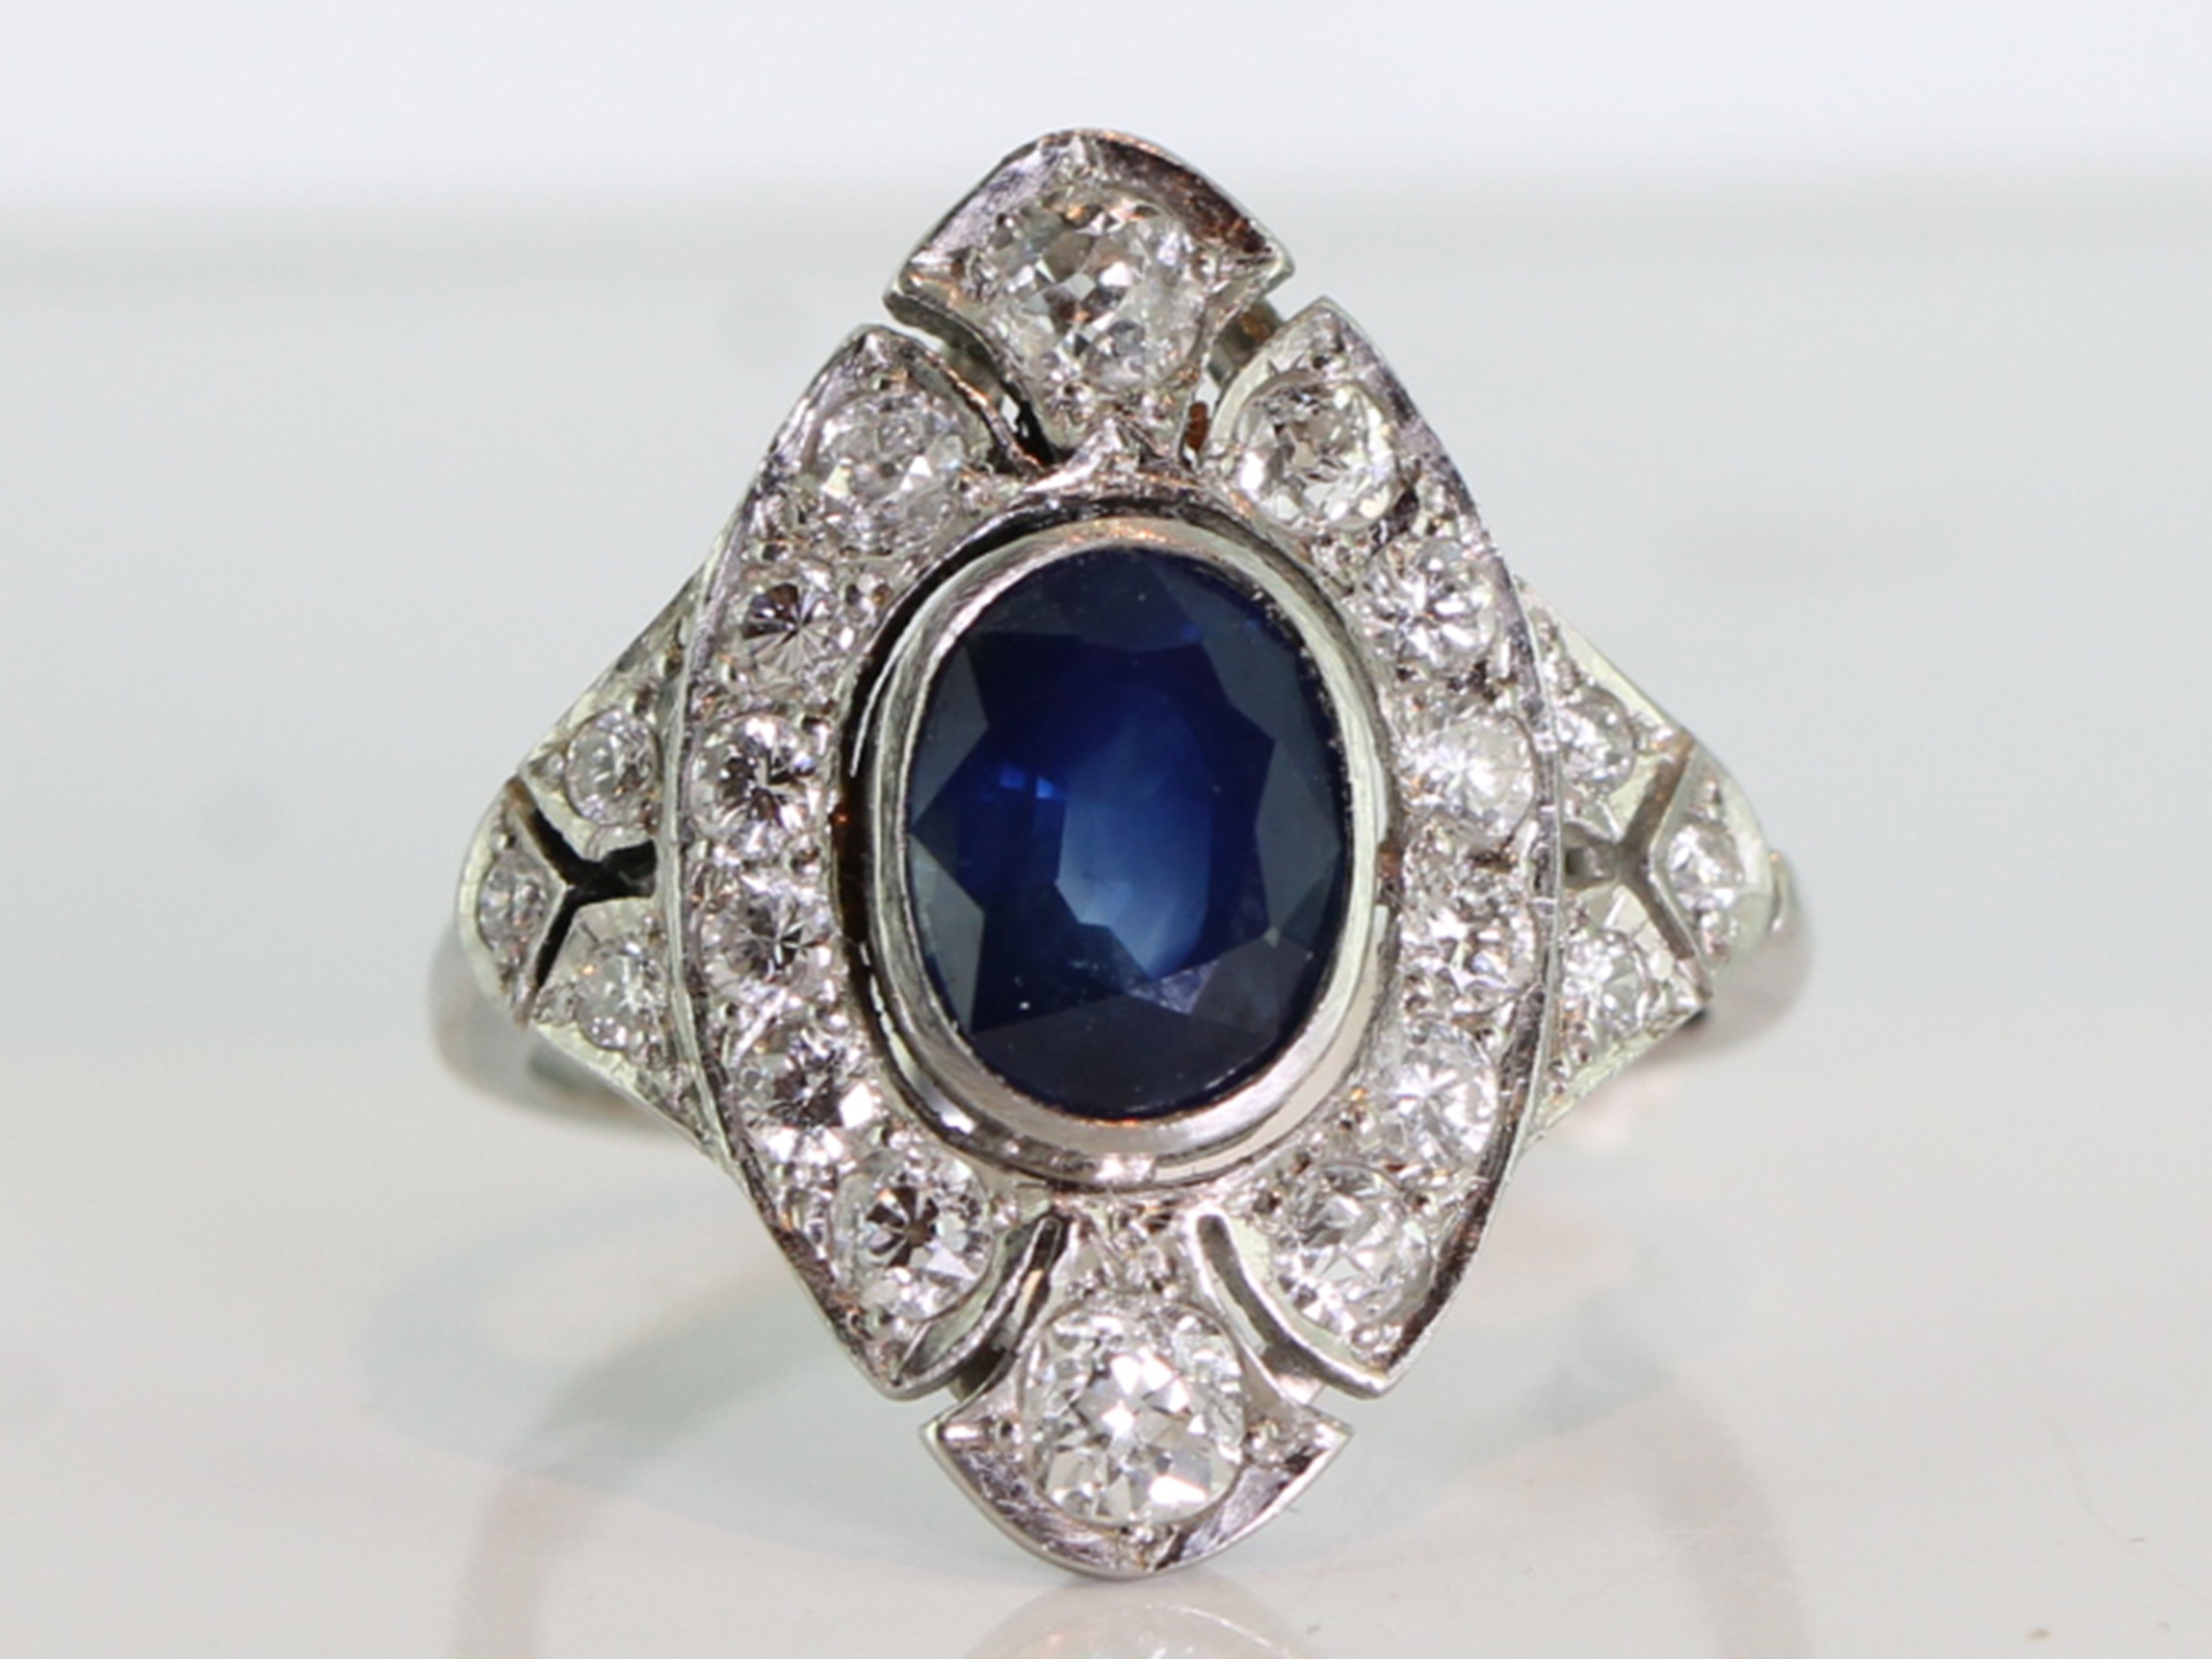 Beautiful art deco inspired sapphire and diamond platinum ring